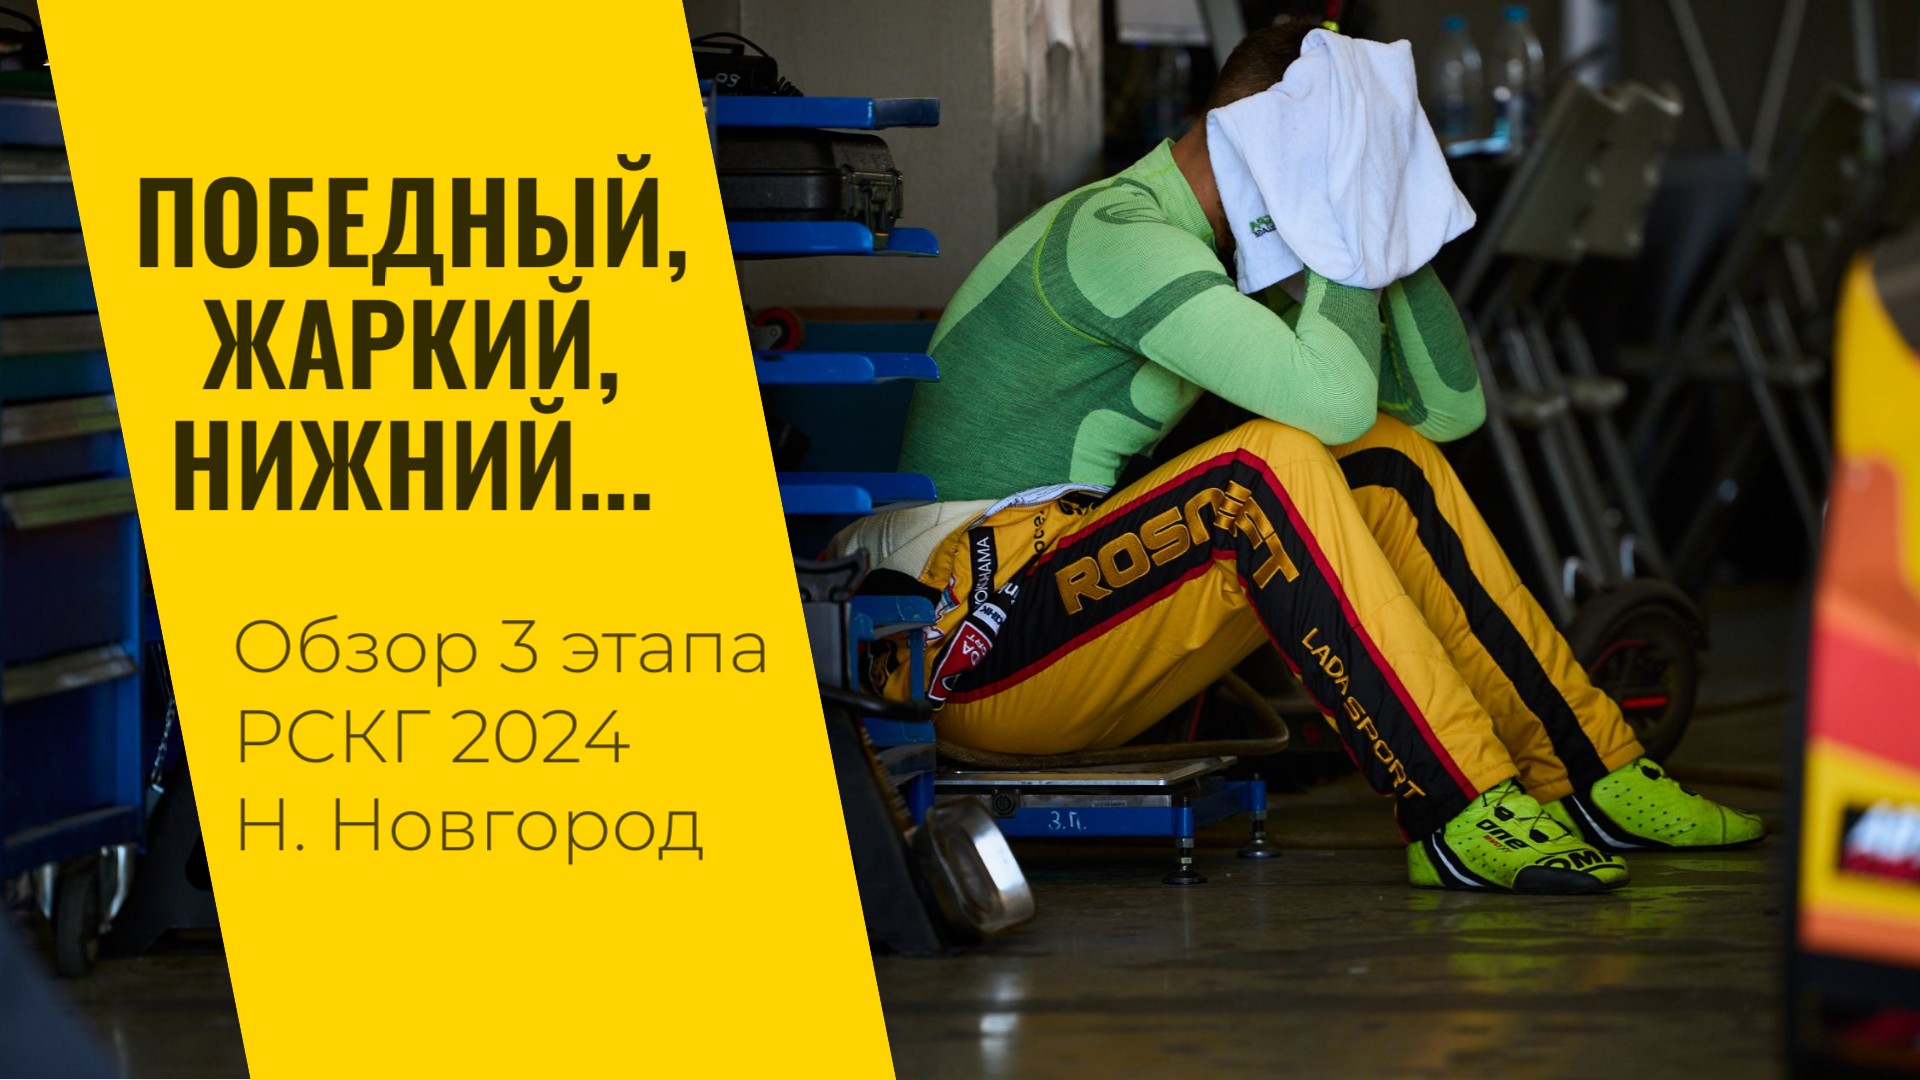 Победный, жаркий, Нижний... 3 этап РСКГ 2024 на "Нижегородском кольце" от LADA Sport ROSNEFT